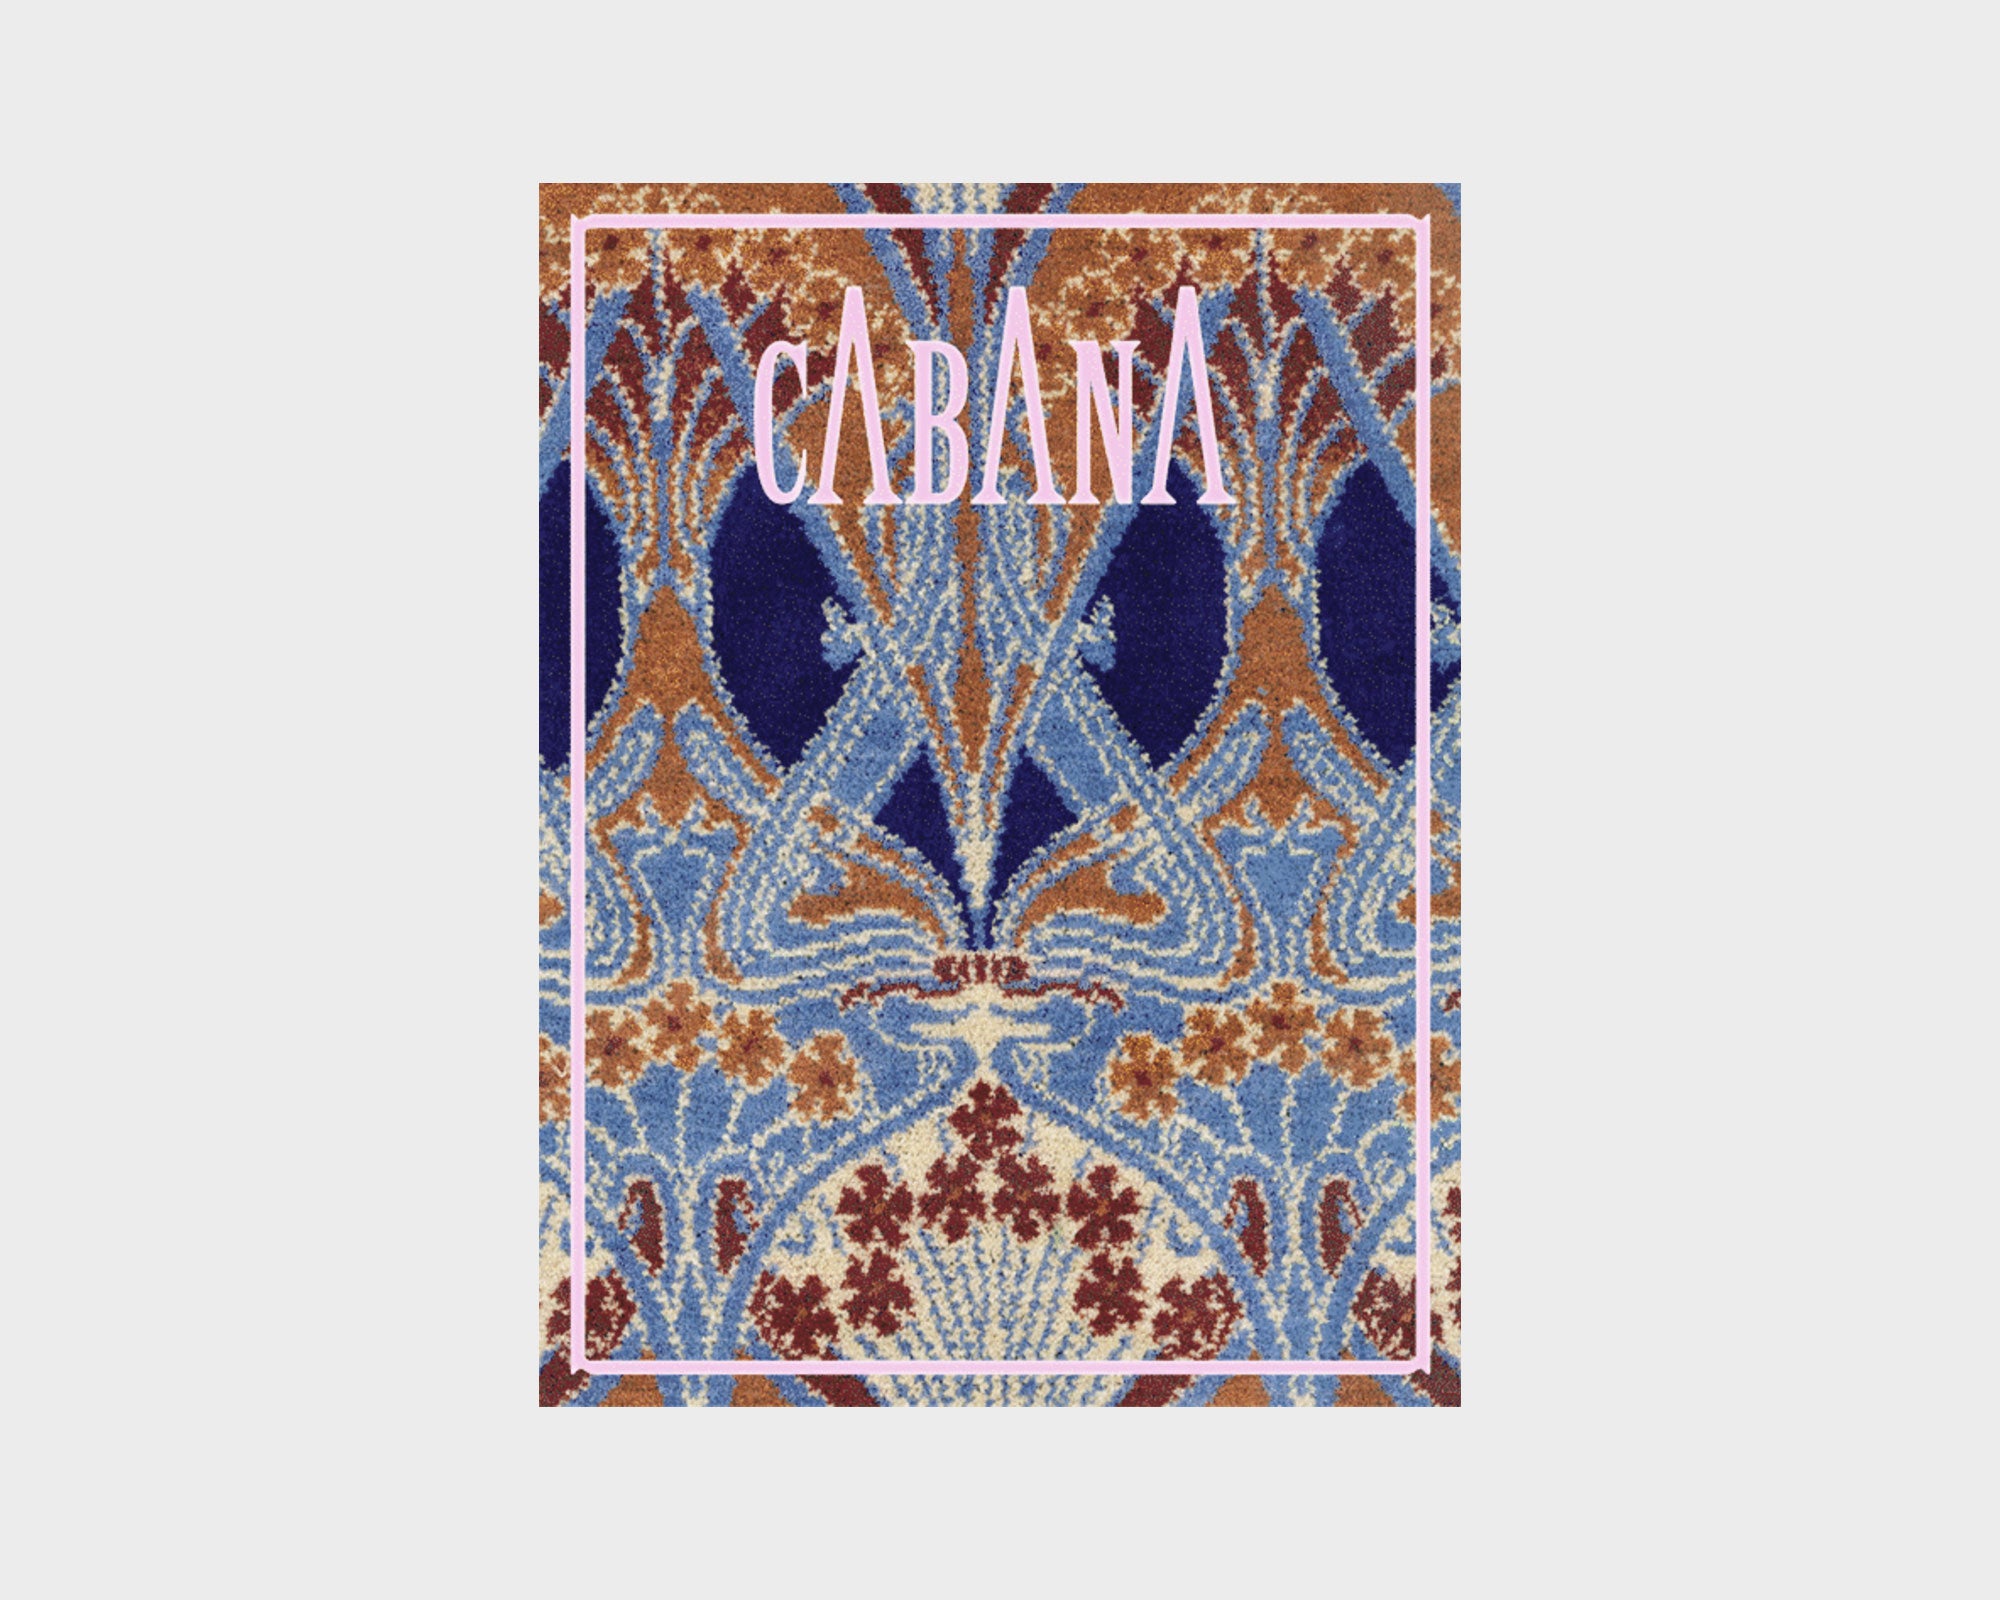 Cabana Magazine 017